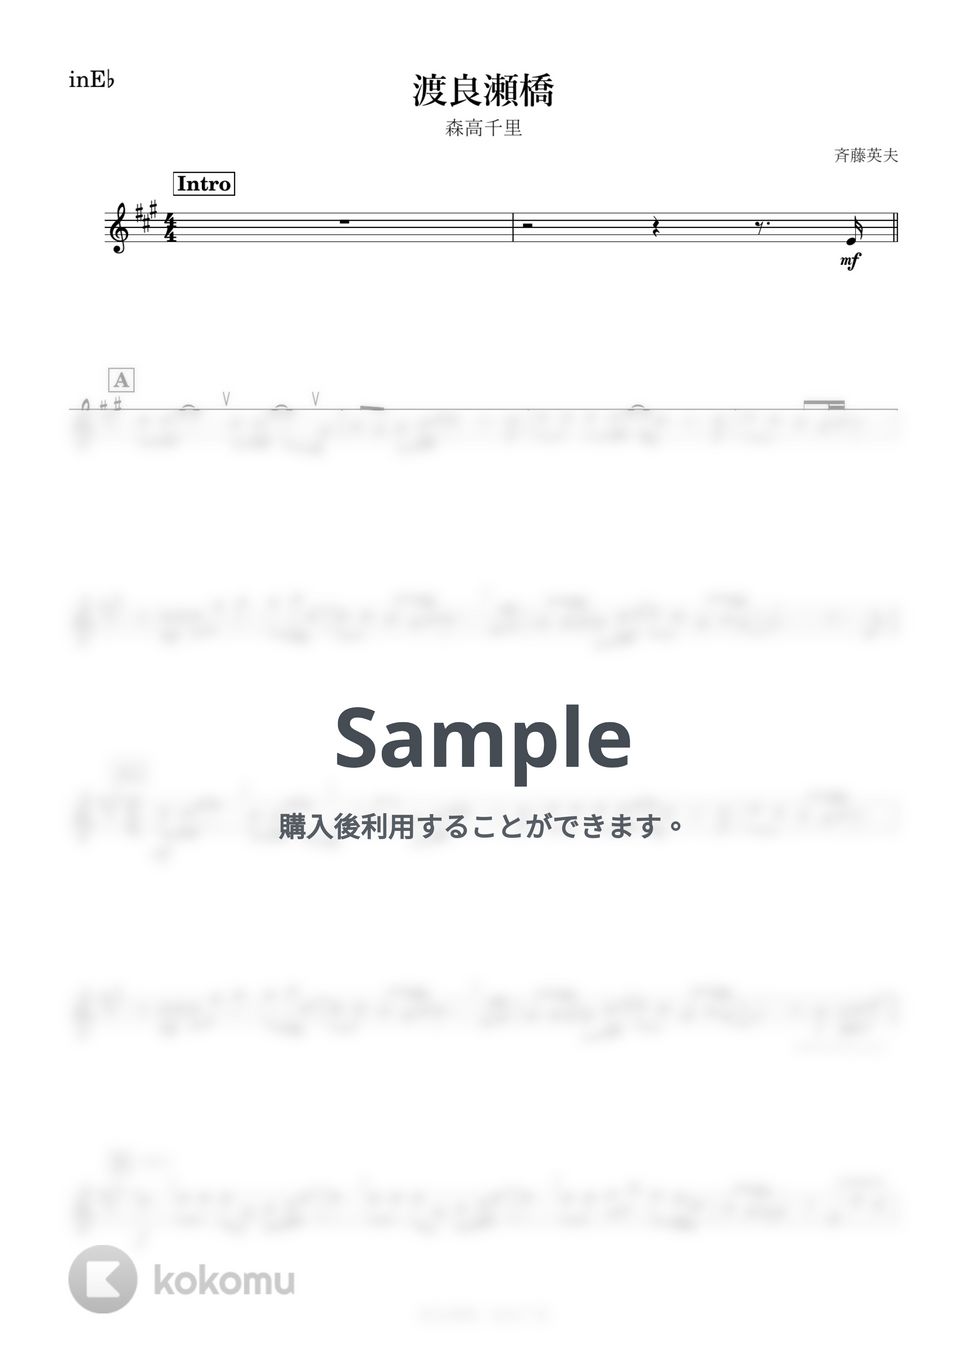 森高千里 - 渡良瀬橋 (E♭) by kanamusic